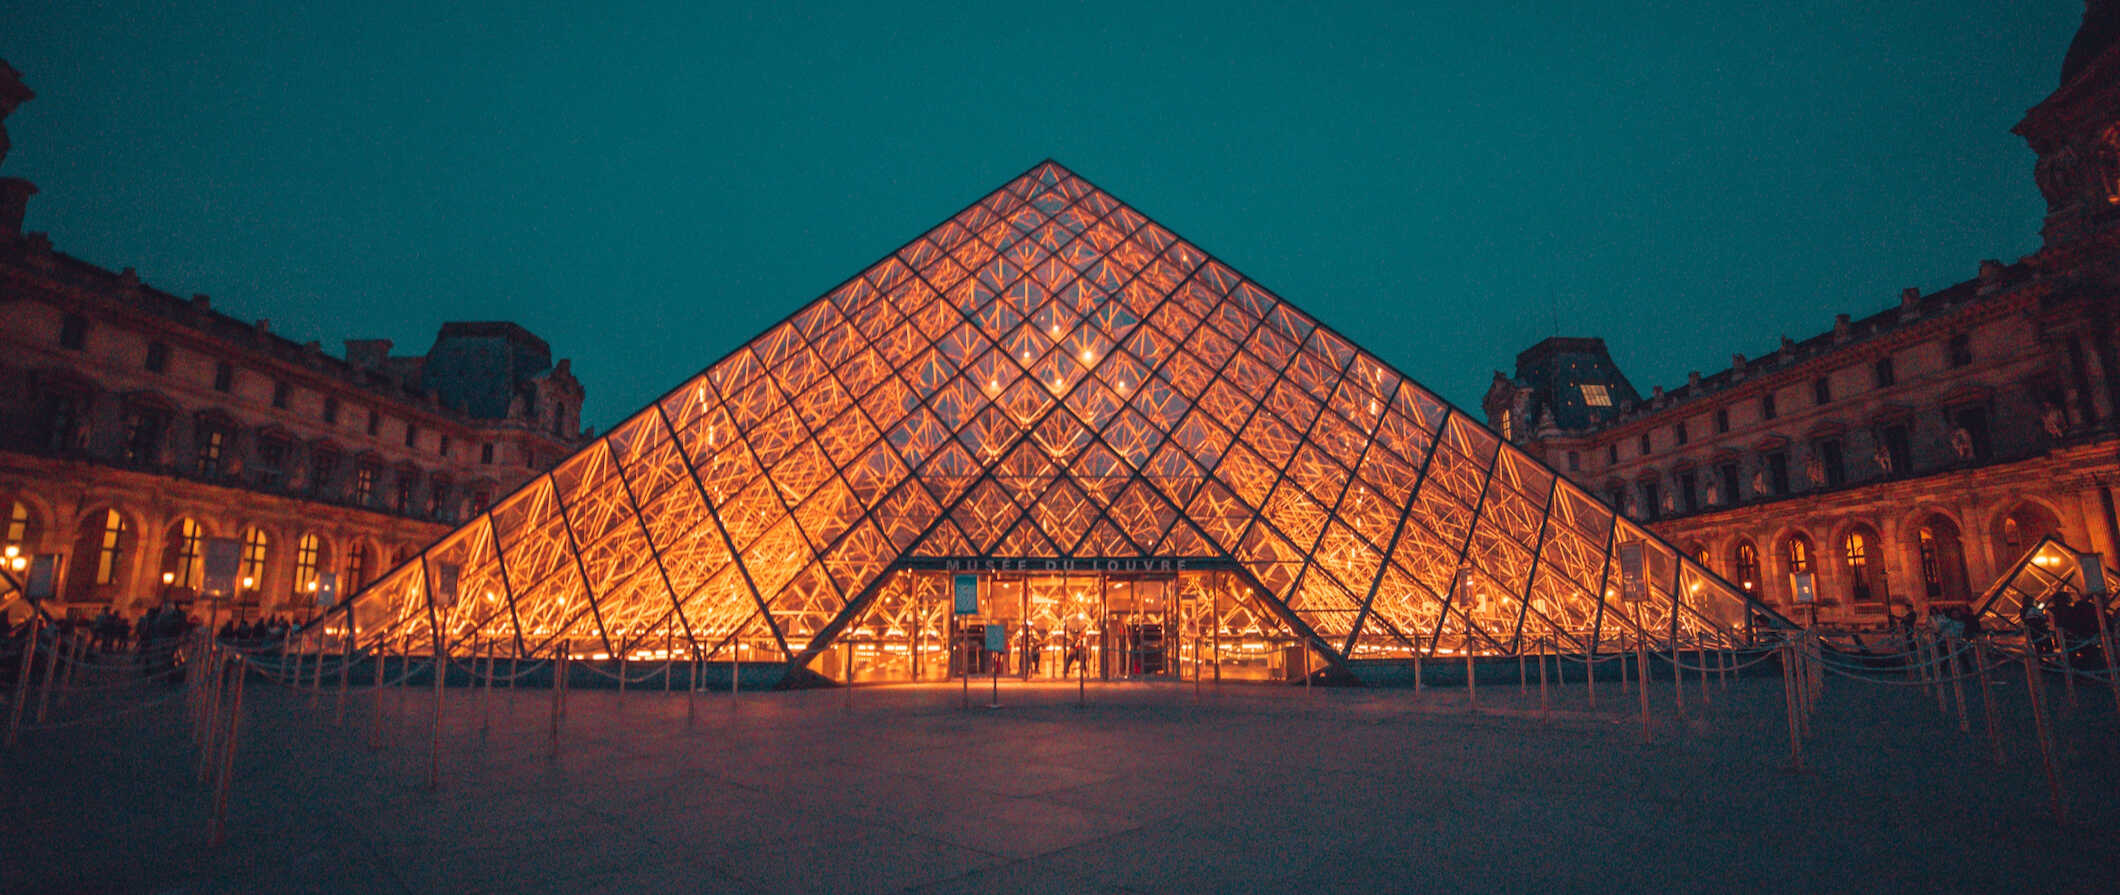 夜晚，法国巴黎的卢浮宫金字塔灯火通明